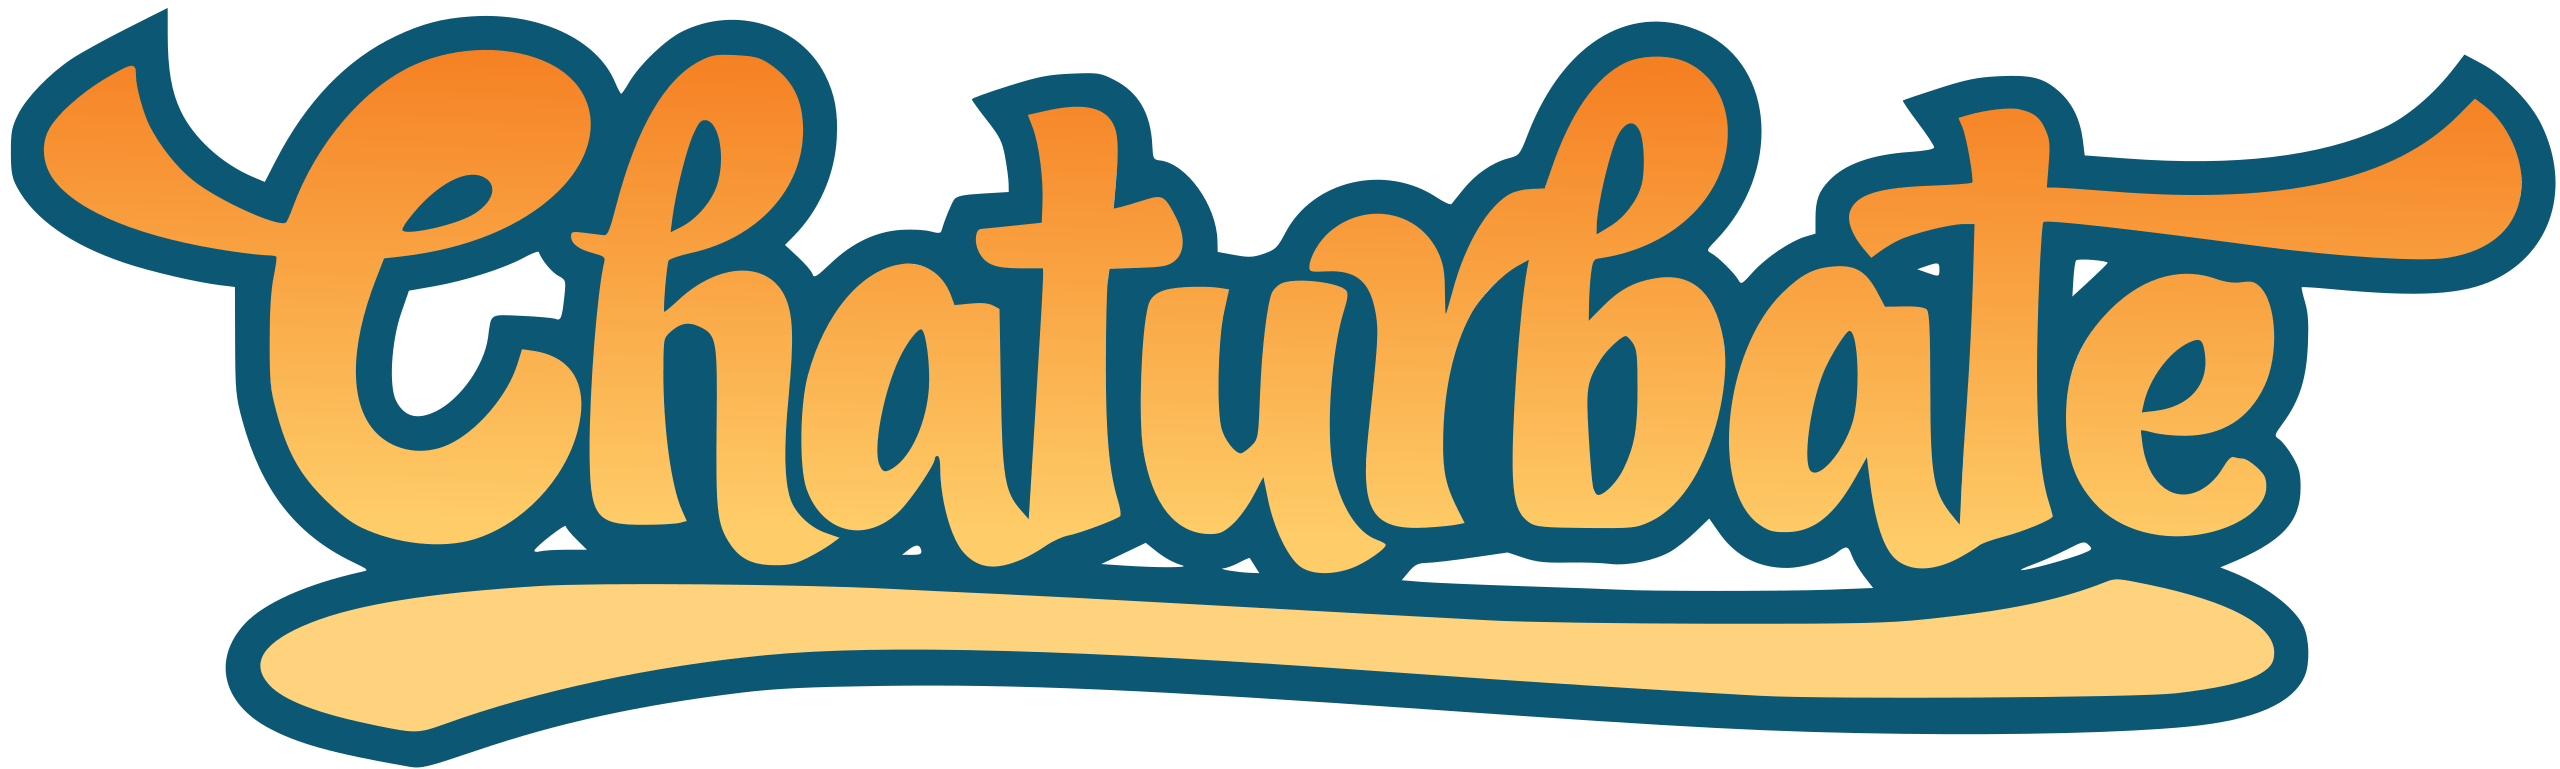 chaturbate cam site logo